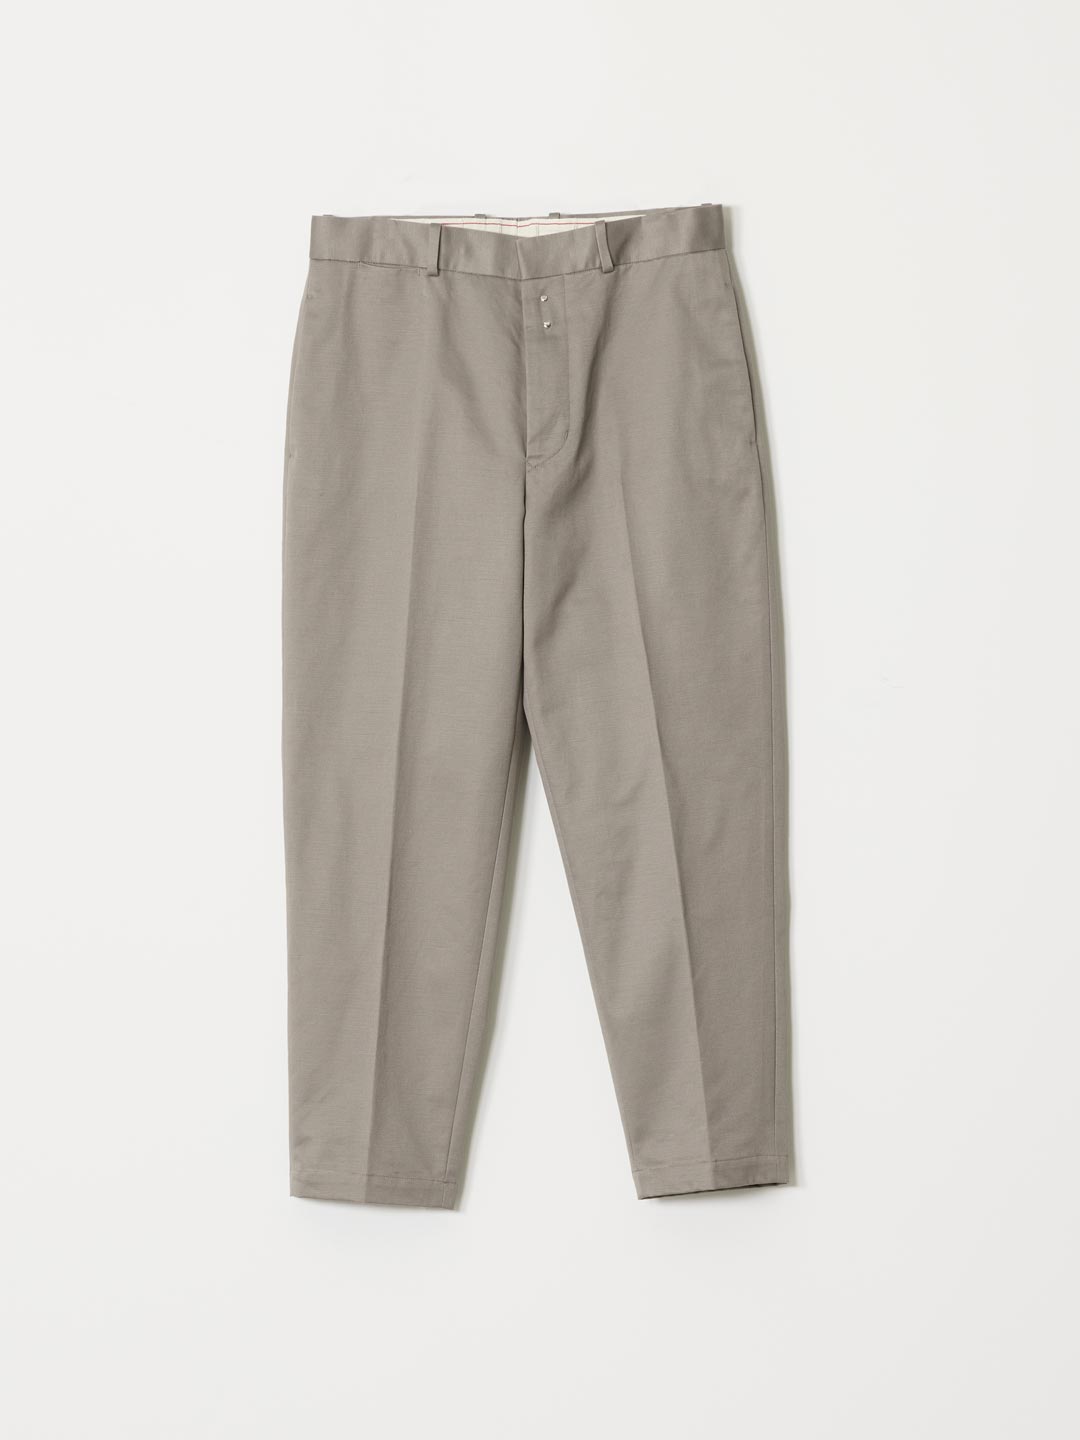 San Joaquin Chino Loose Fit Tapered Pants - Gray